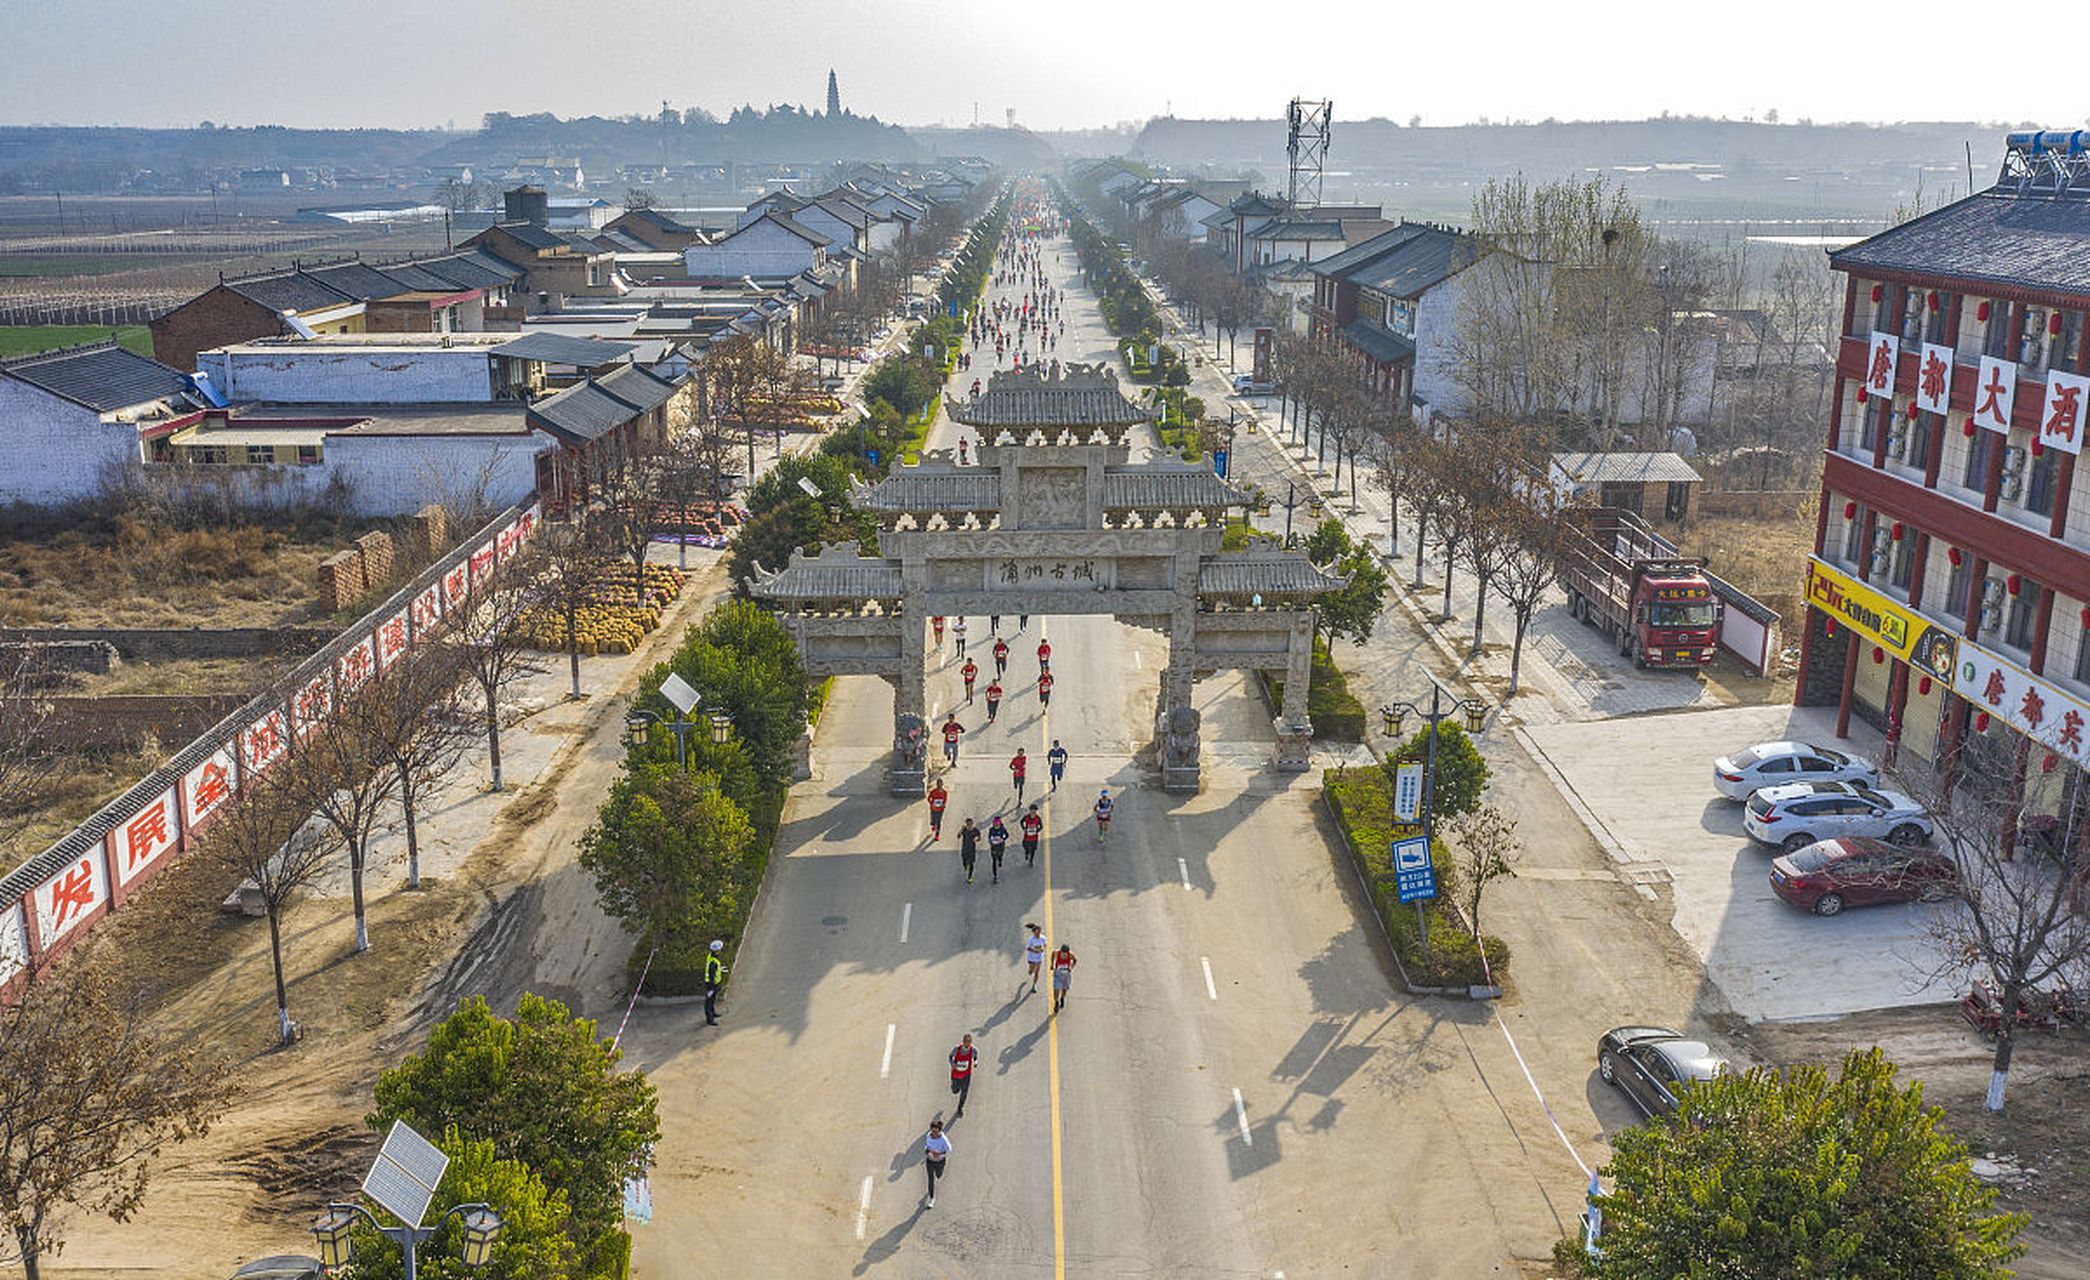 河南省周口市太康县,这是一座历史悠久,文化底蕴深厚的历史文化名城